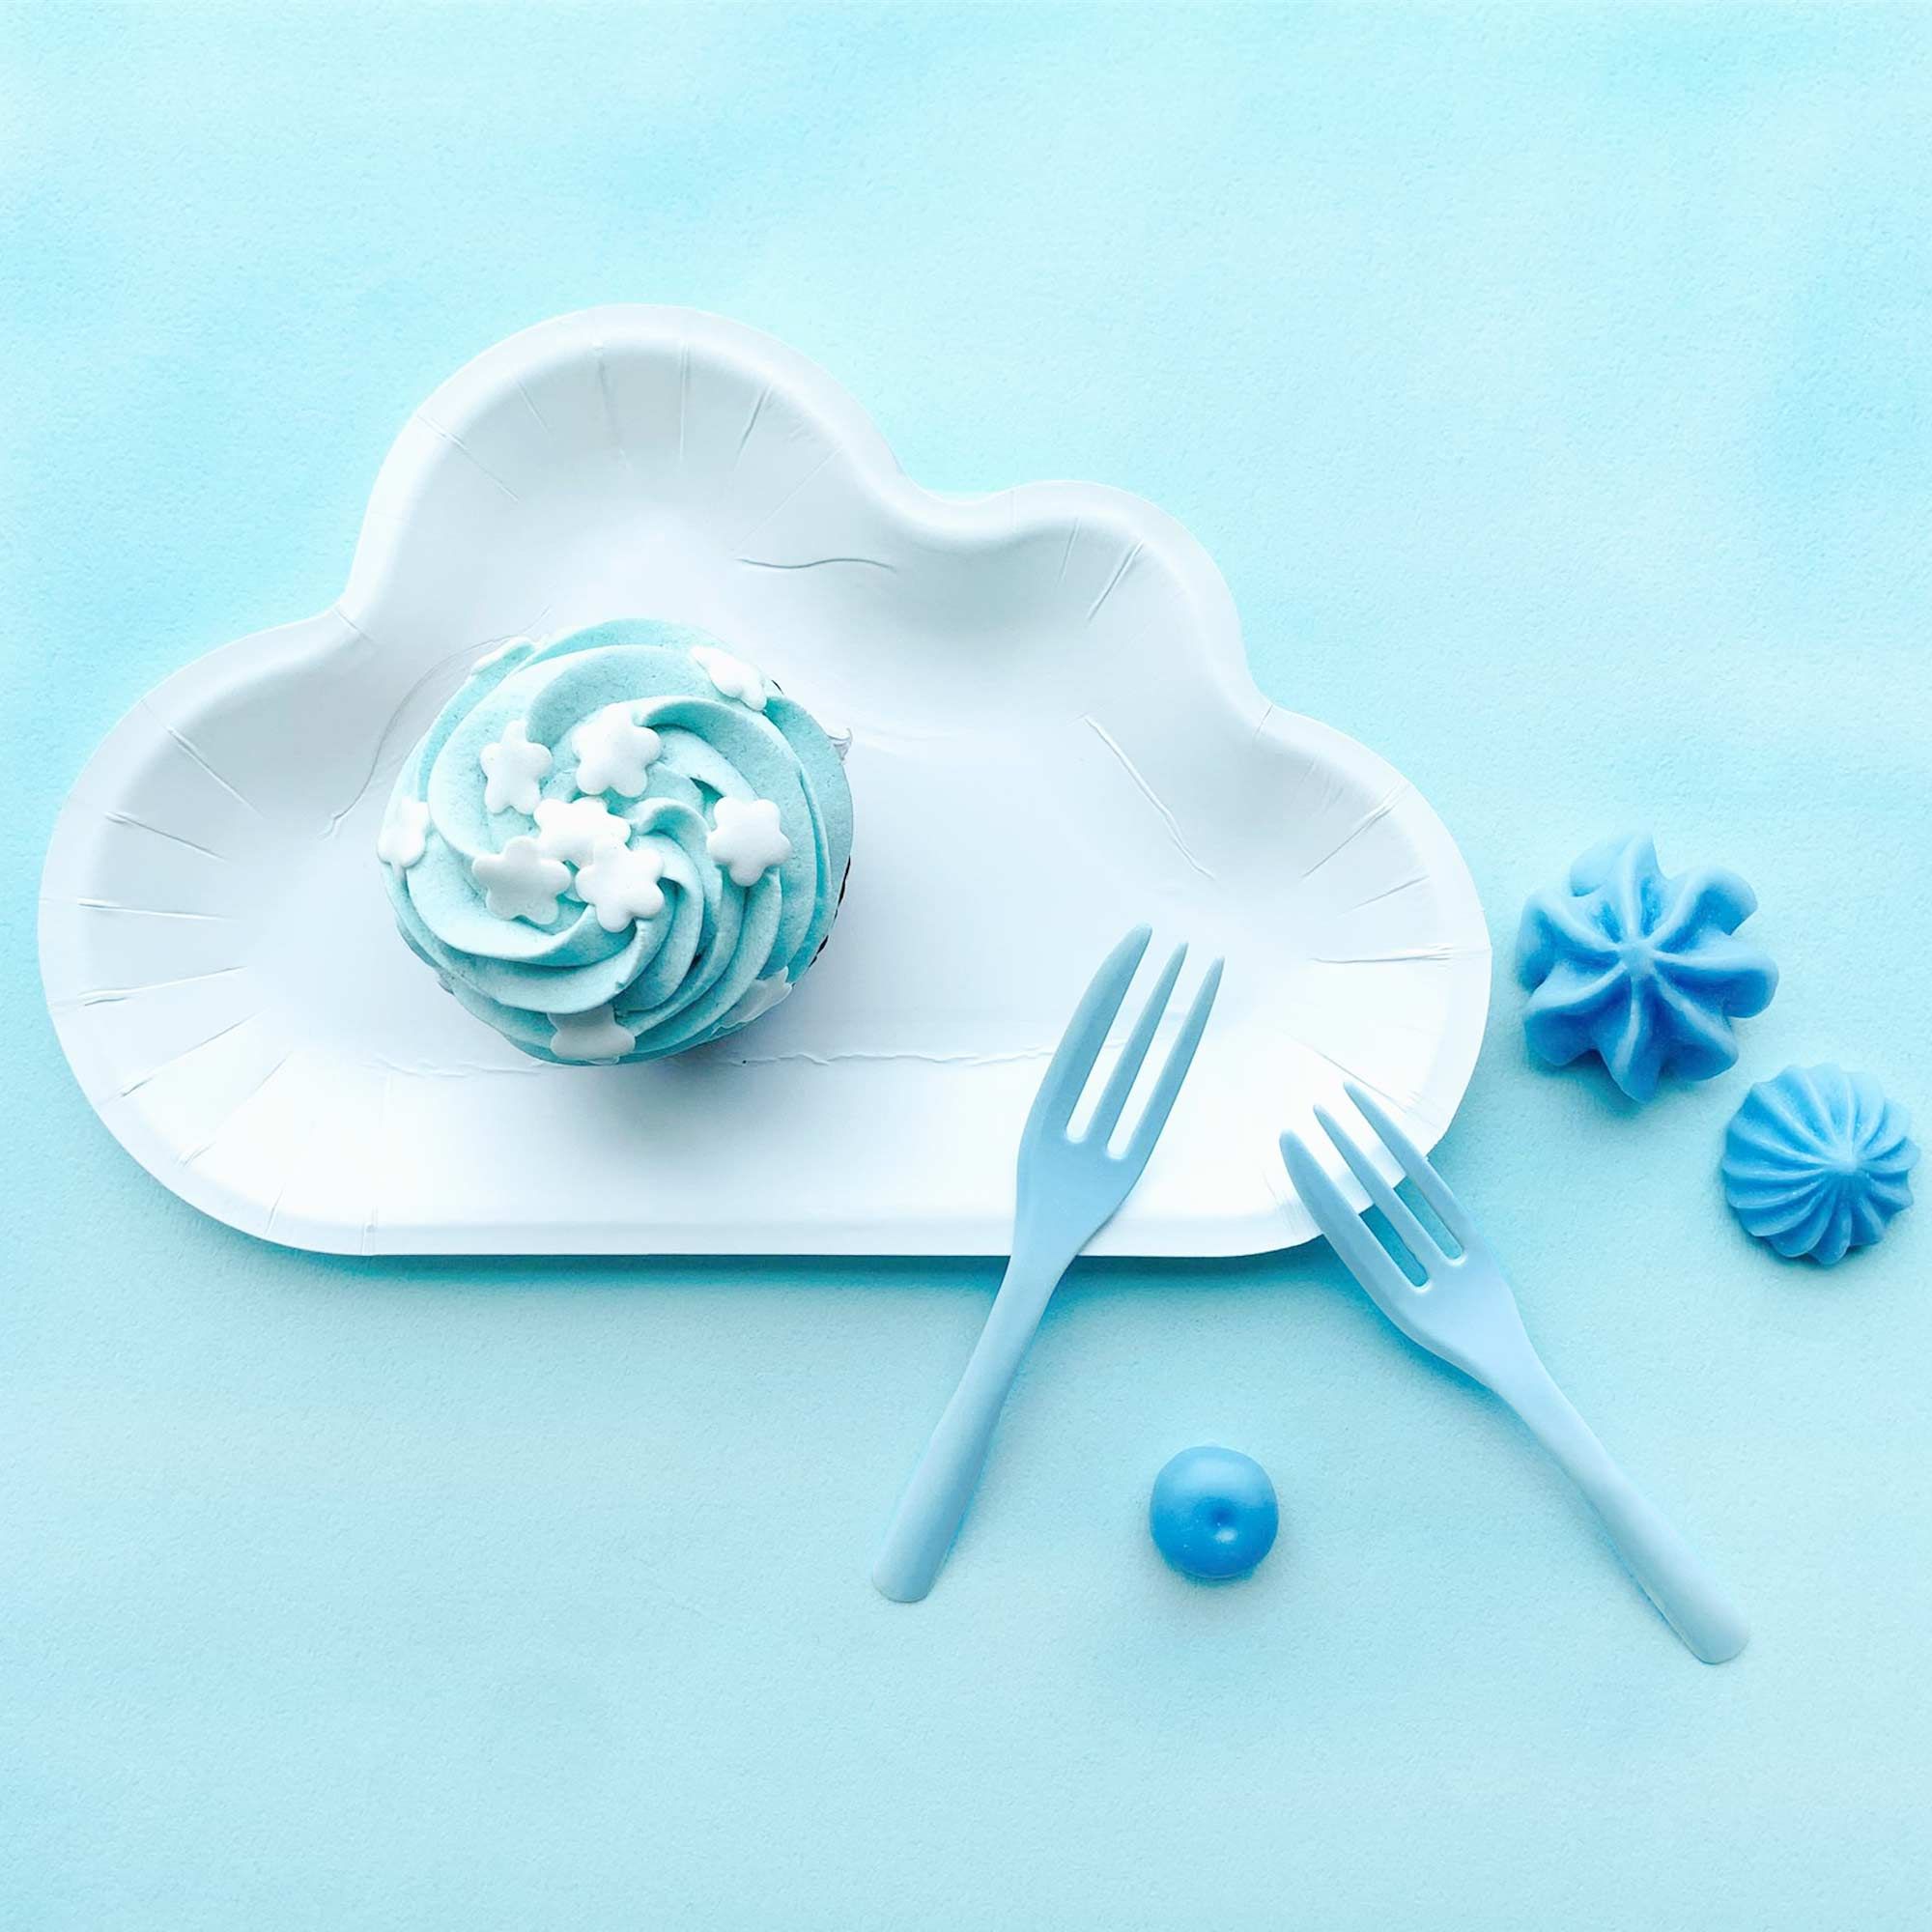 하얀 구름 팬 세트와 파란색 프렌치 케이크 포크로 푸른 하늘과 하얀 구름 분위기를 연출합니다.